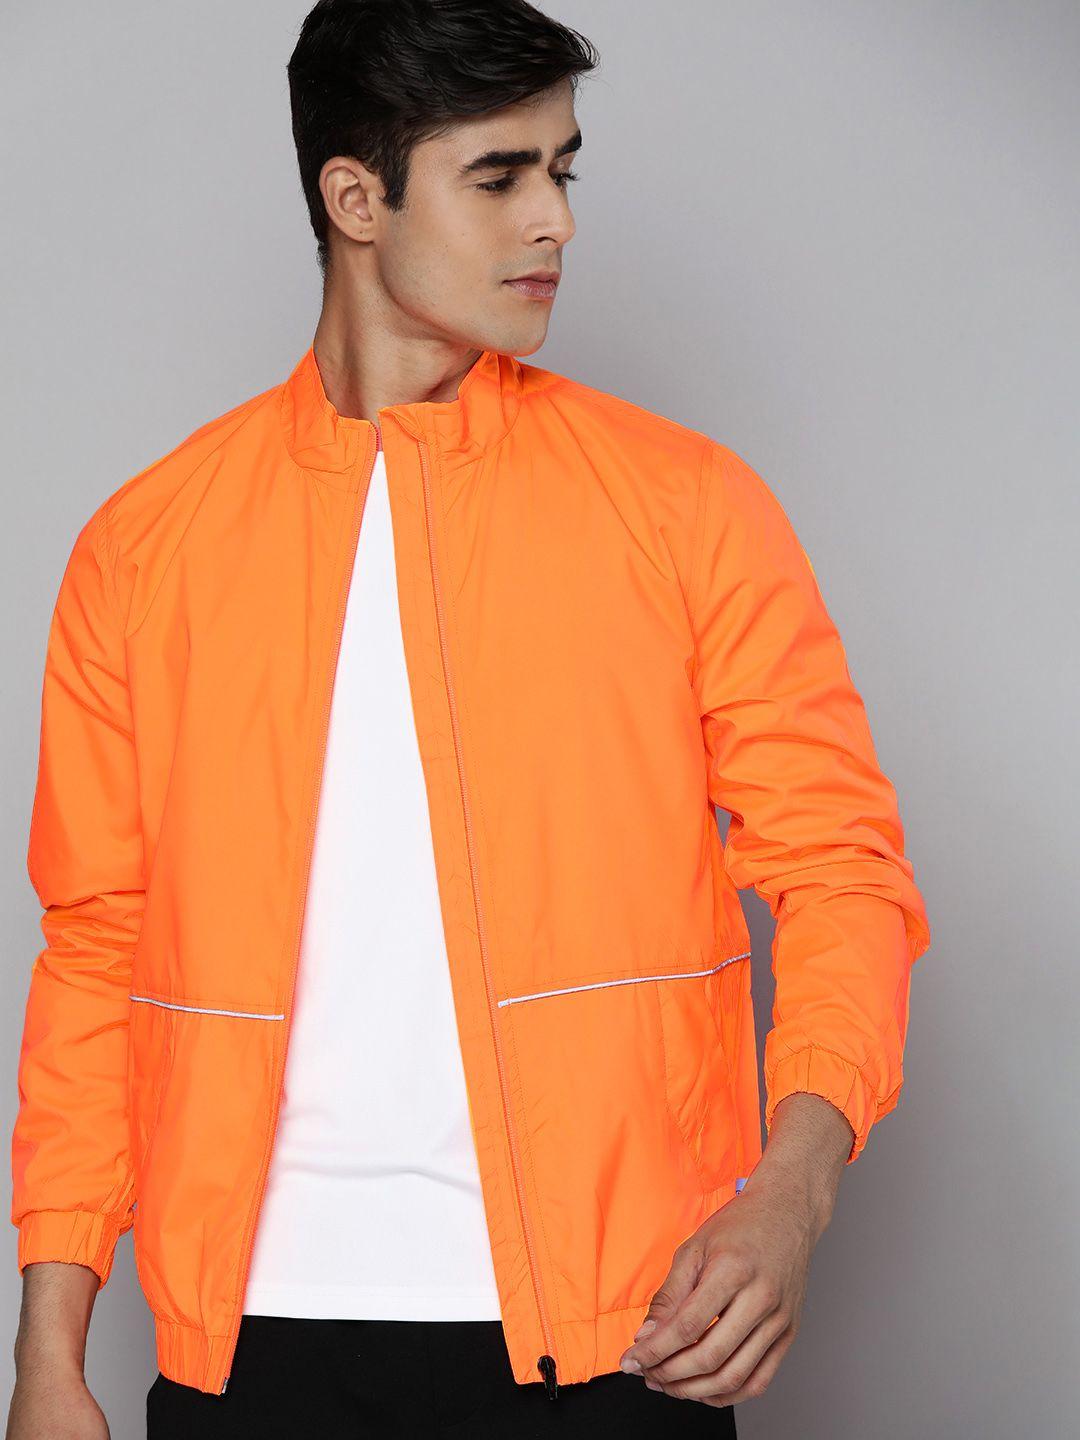 hrx by hrithik roshan men orange typography sporty jacket